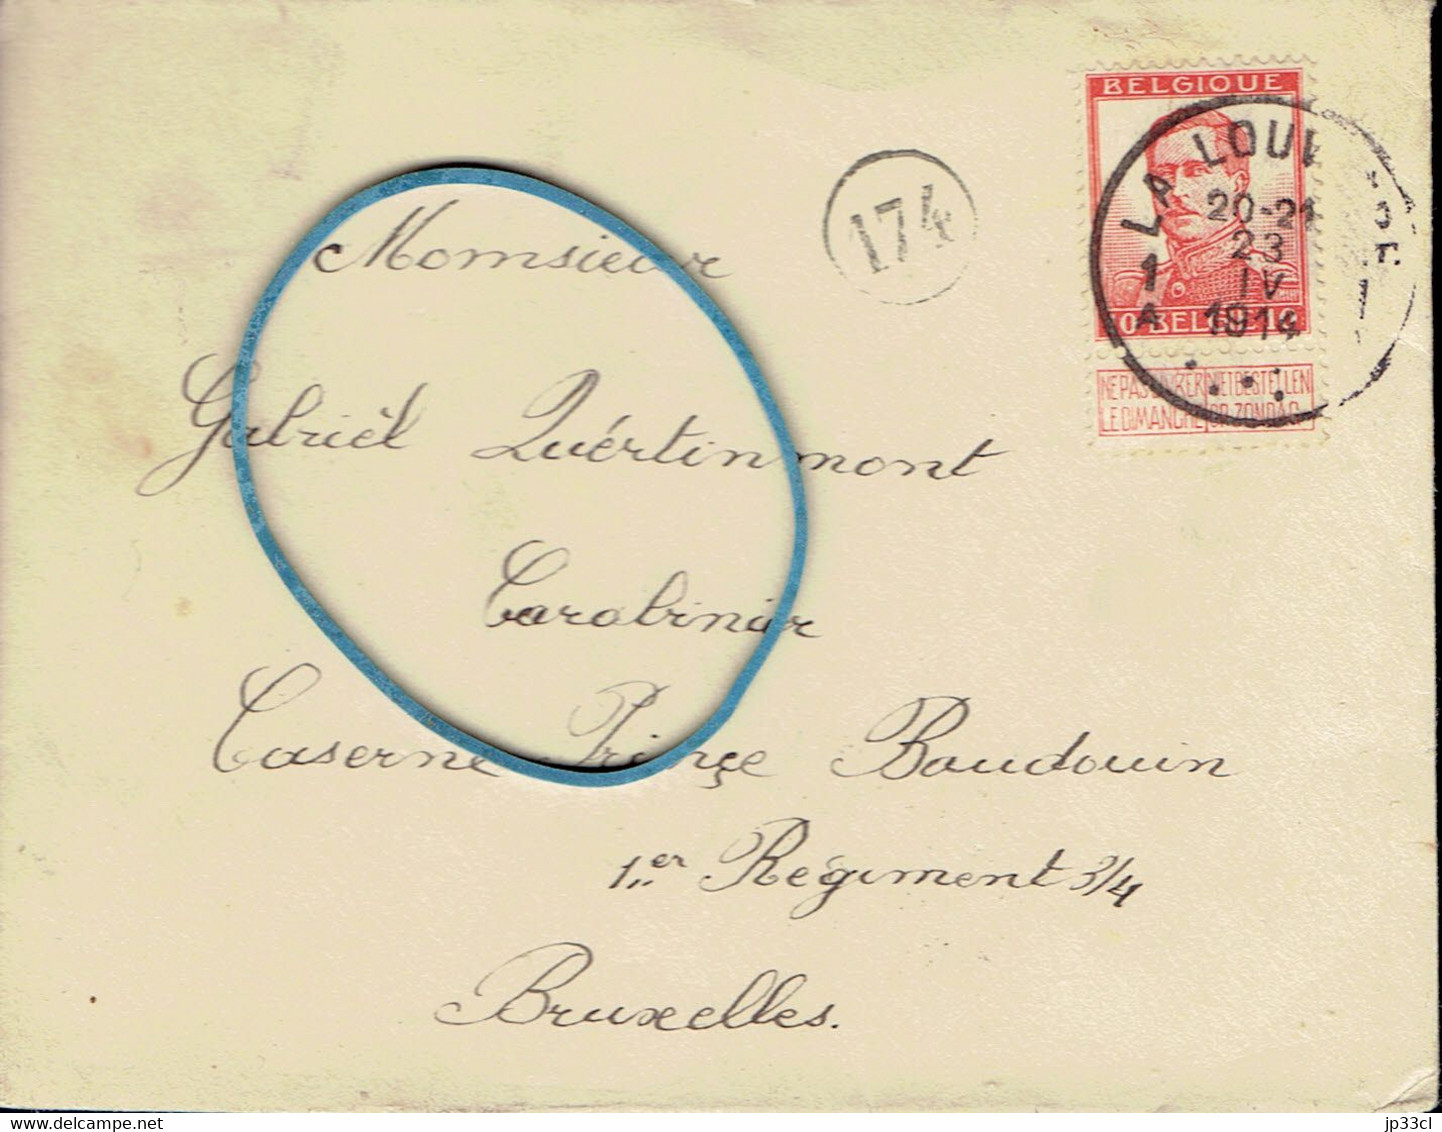 Enveloppe Adressée Au Soldat Gabriel Quertinmont, Carabinier, Caserne Prince Baudouin, Bxl (La Louvière, 23/04/1914) - Historical Documents